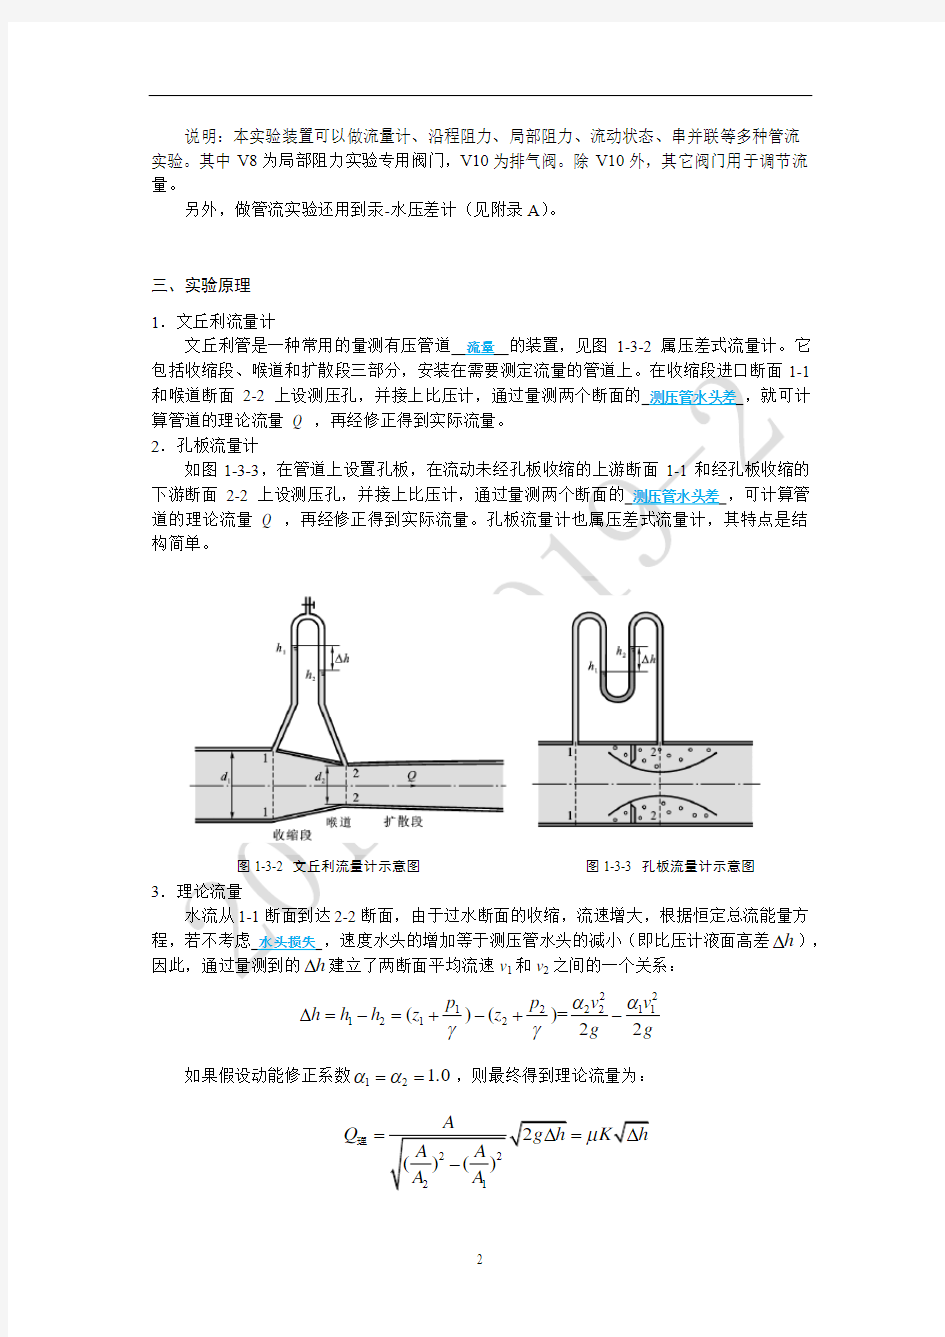 中国石油大学(华东)流量计实验报告